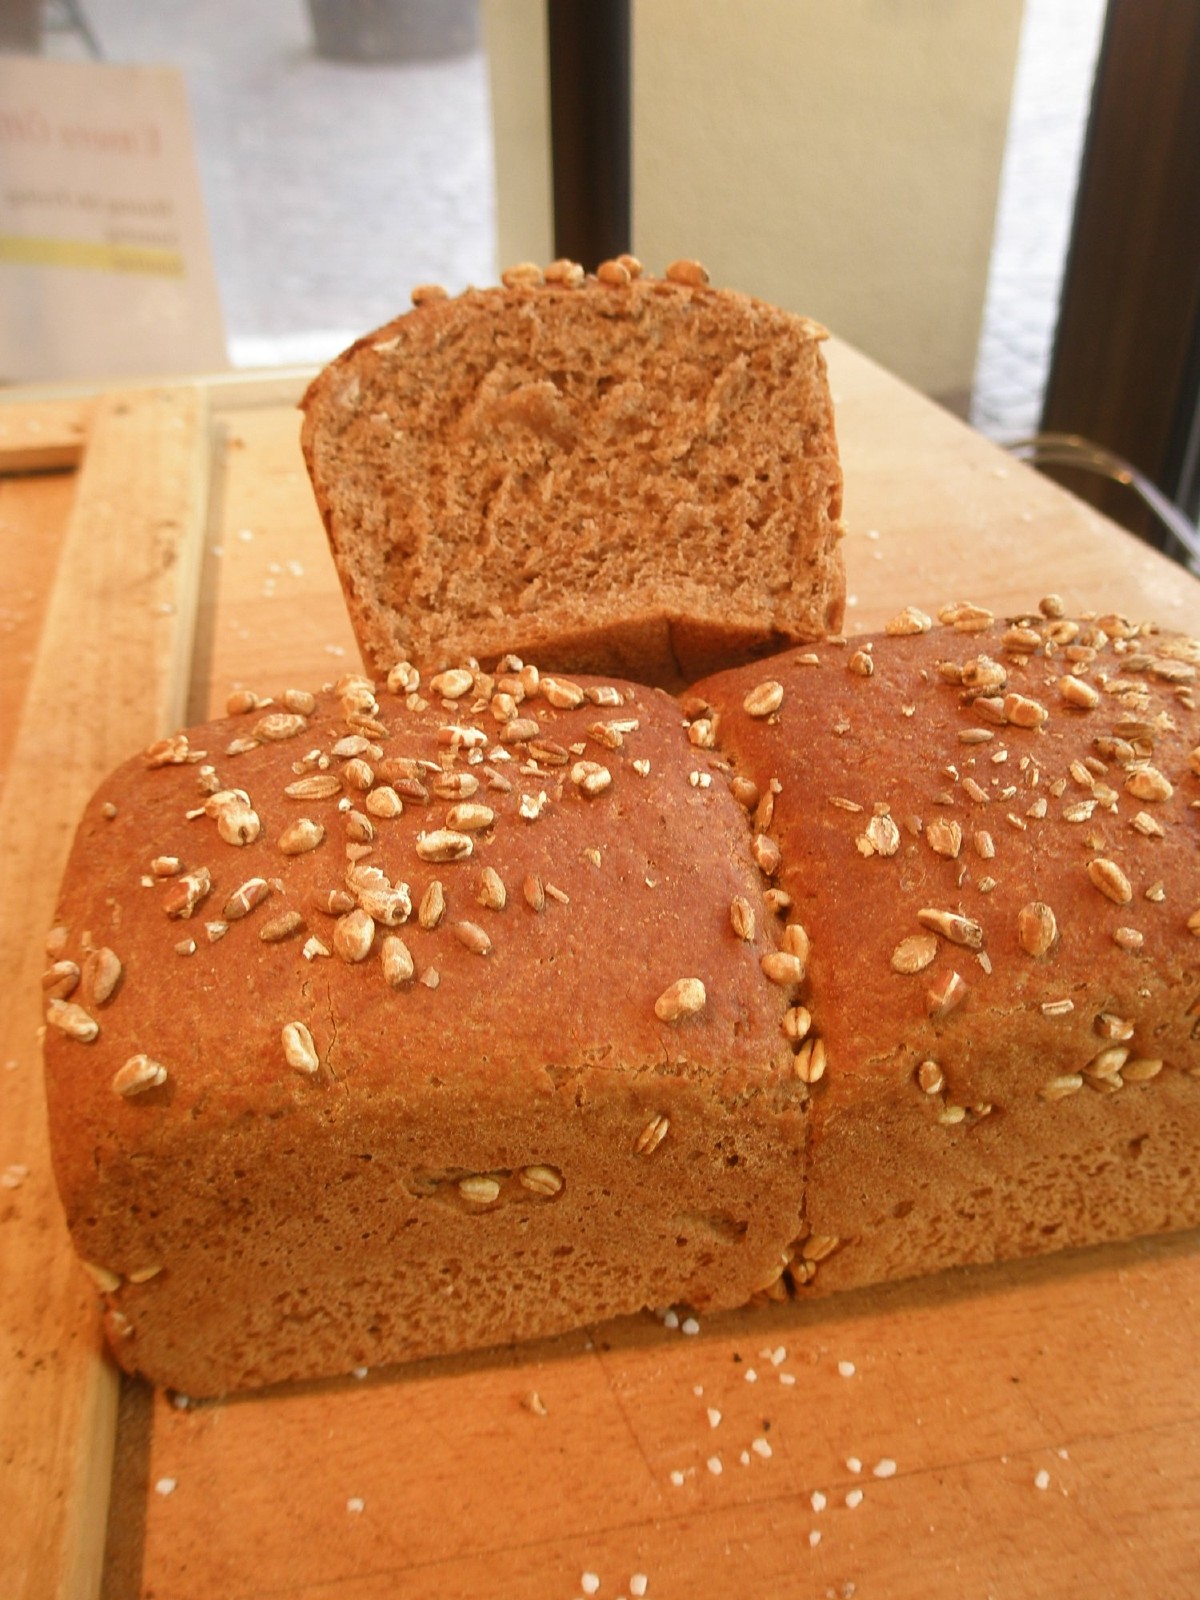 Urgetreide Brot aus unserer Bäckerei. Biologisch und regional!